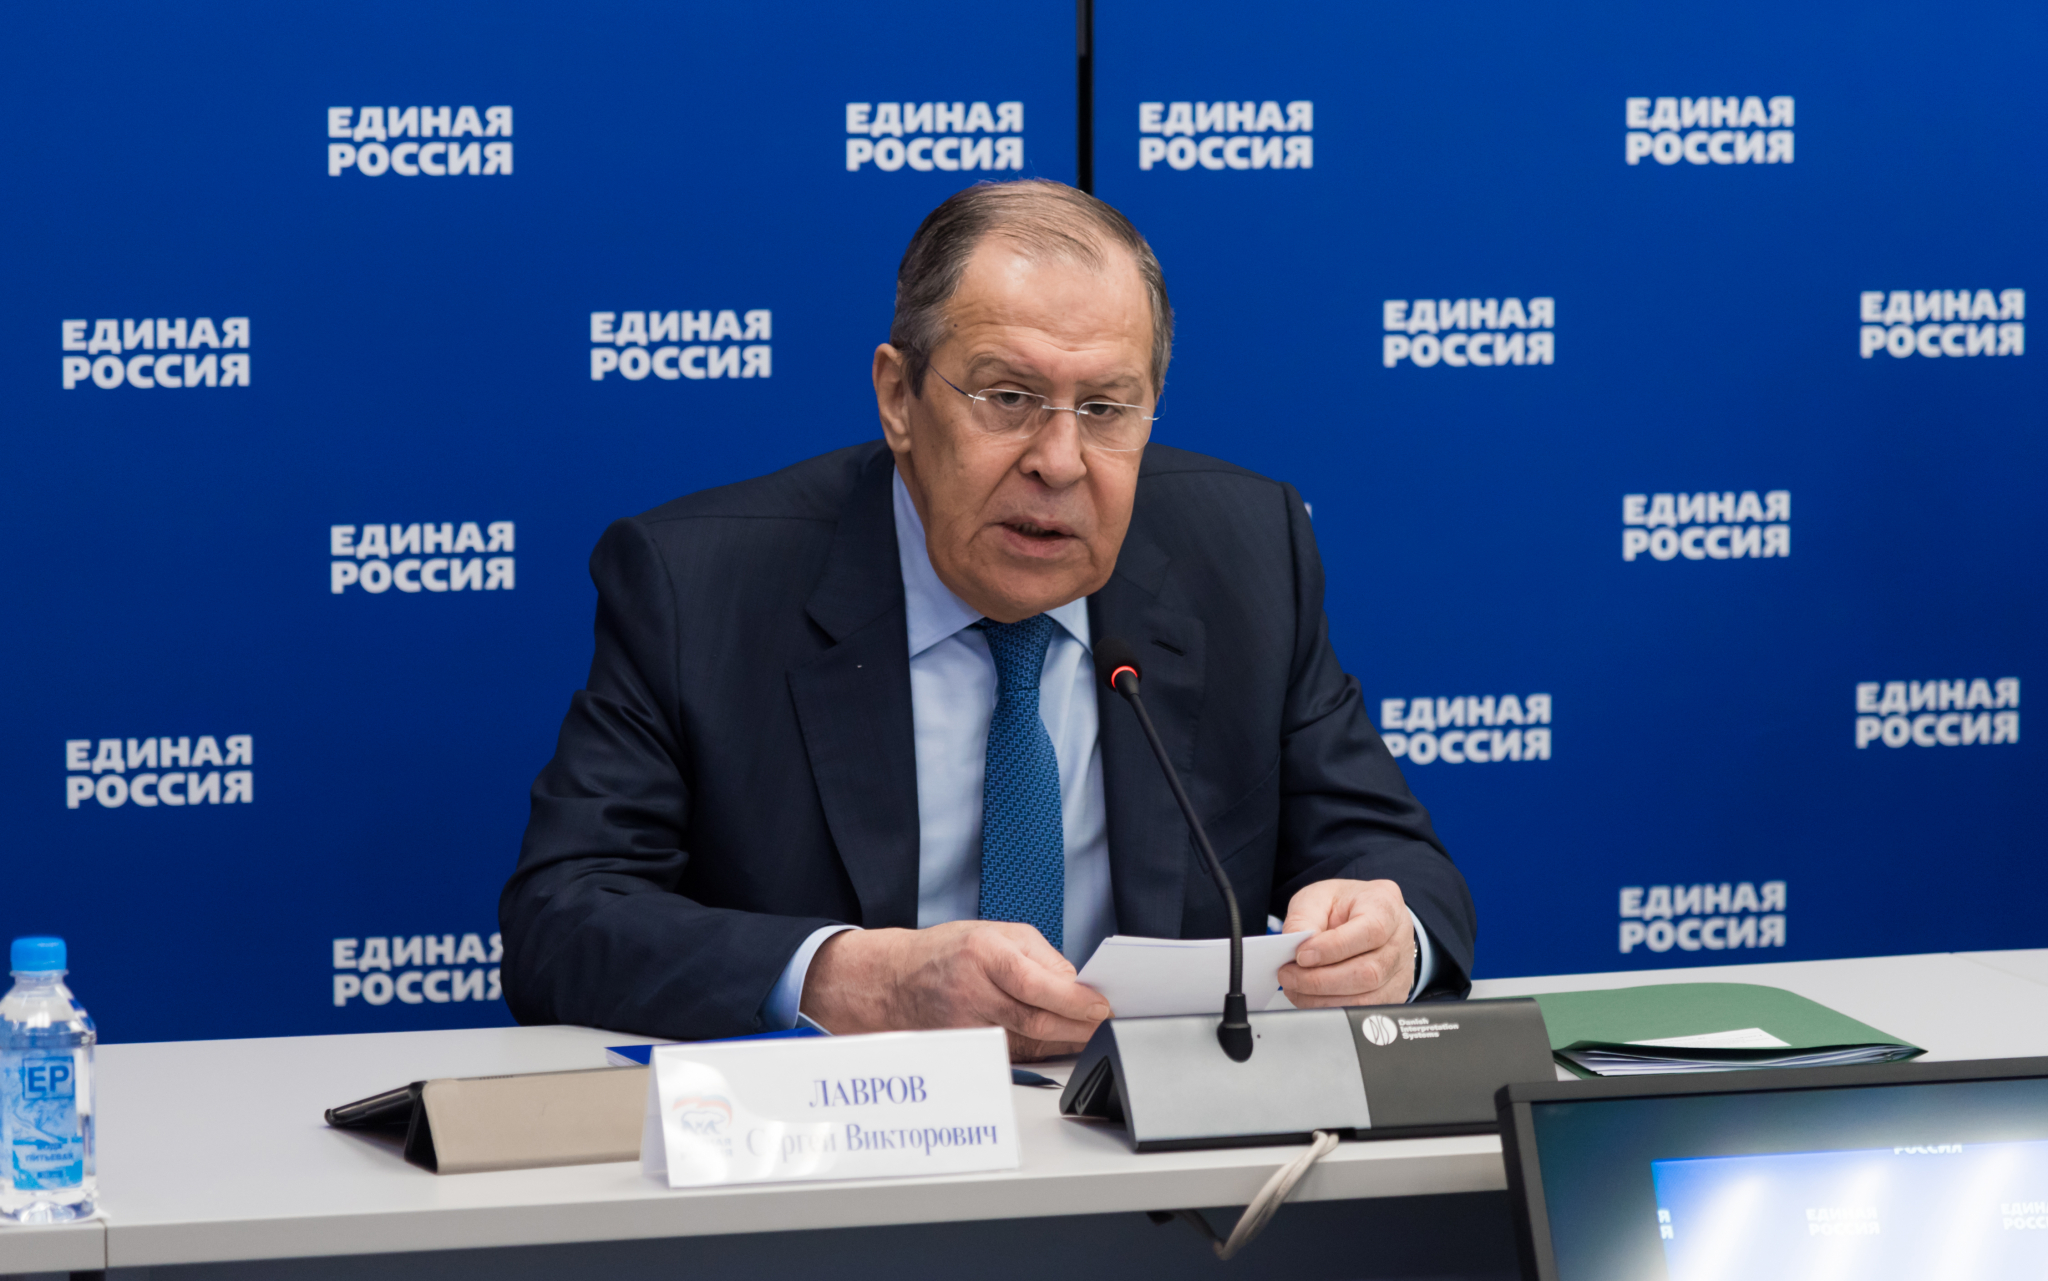 Партия «Единая Россия» будет укреплять внешнеполитический курс страны